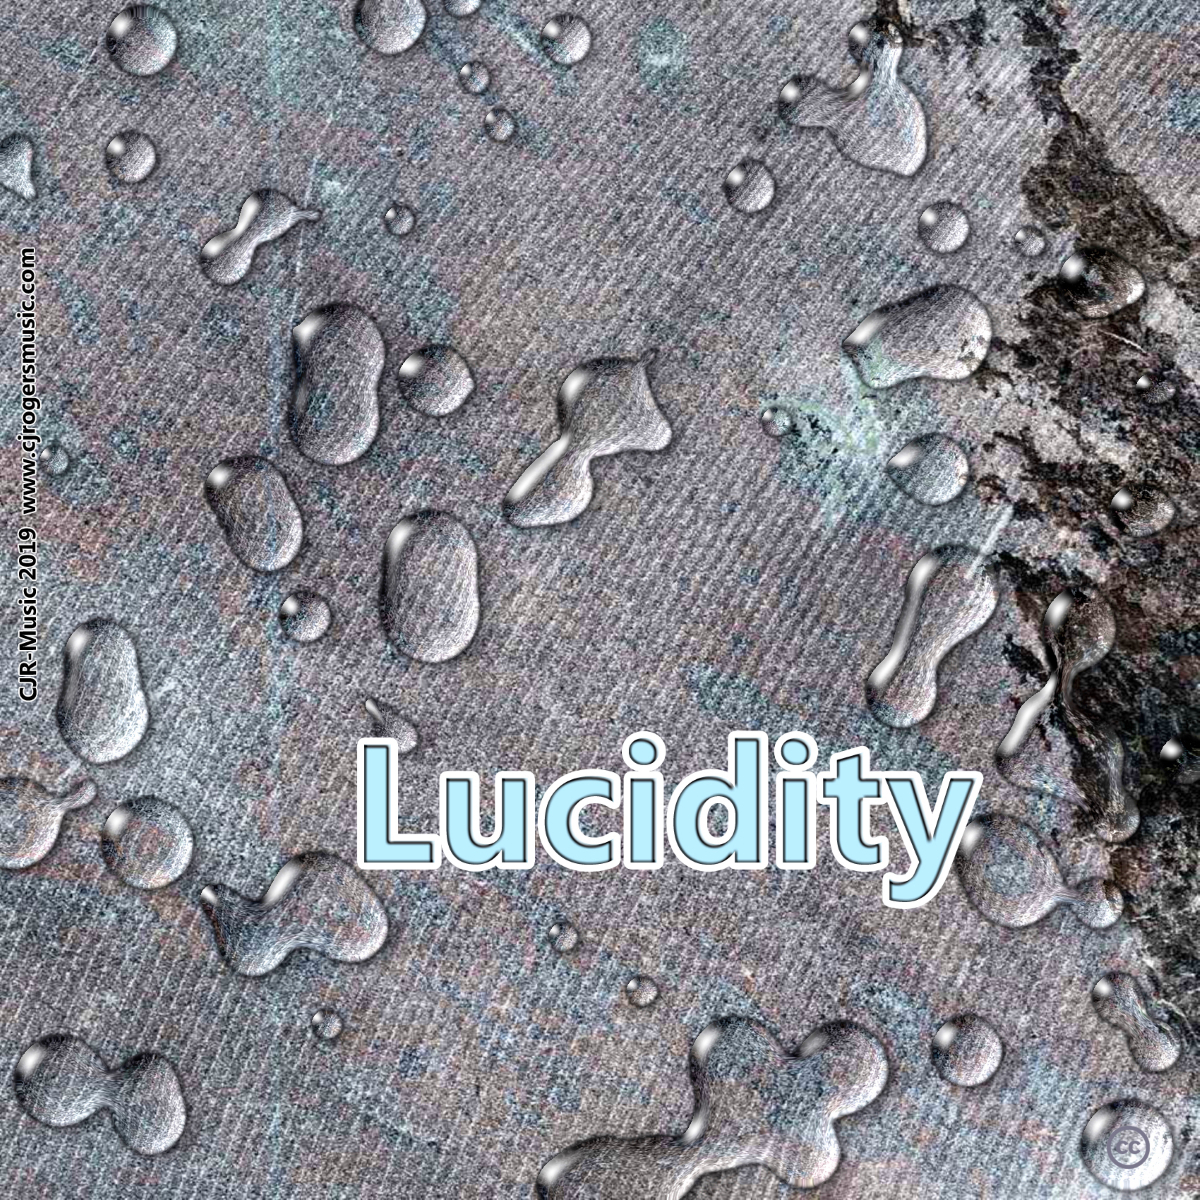 Lucidity - Fullsize Cover Art